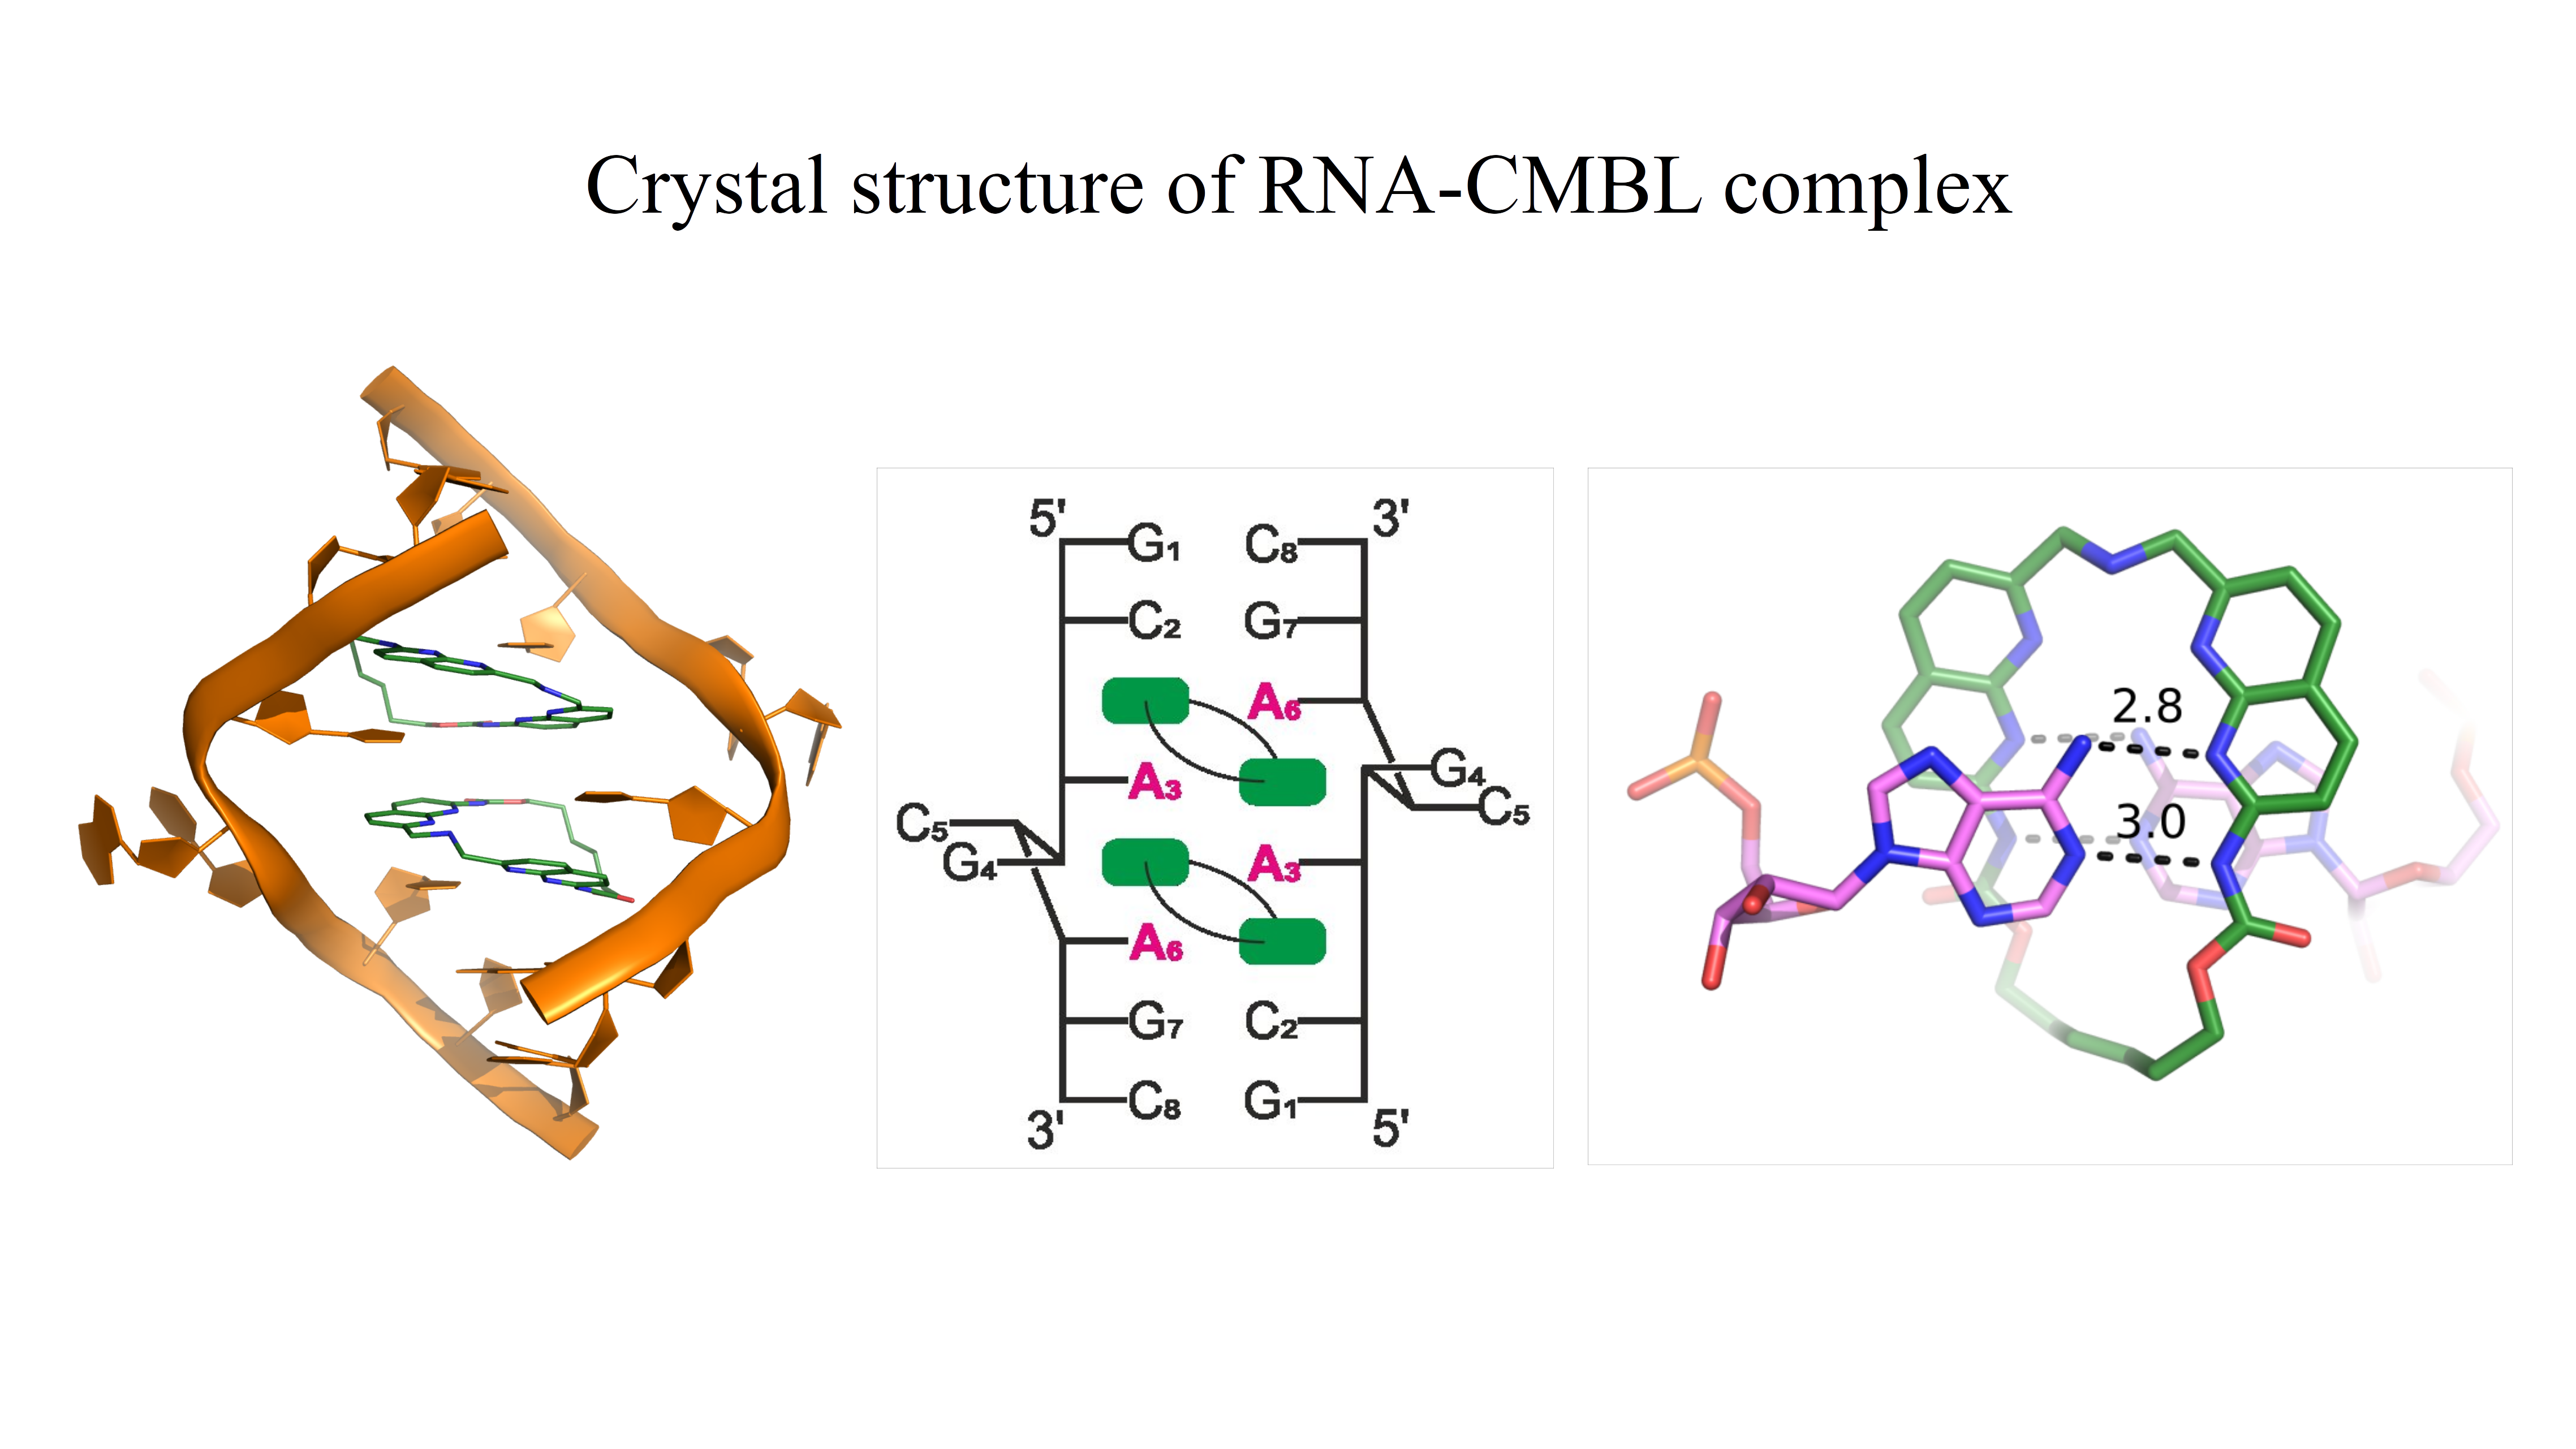 RNA-CMBL-compleks. Na rysunku przedstawiono strukturę krystaliczną RNA zawierającą powtórzenia CAG związane z patogenezą niektórych chorób neurodegeneracyjnych. Po lewej stronie znajduje się model krystaliczny kompleksu RNA z małą cząsteczką CMBL. W środkowej części helisy związane są dwie cząsteczki ligandu. Widać również, że na każdej z dwóch nici dupleksu dwie reszty: guanozyna i cytozyna, są wywinięte na zewnątrz helisy. W środkowej części rysunku znajduje się schemat kompleksu struktury krystalicznej przedstawionej po lewej stronie. Na schemacie widać dokładnie strukturę drugorzędową dupleksu. Każda cząsteczka ligandu oddziałuje z dwiema resztami adenozyn znajdujących się na przeciwnych niciach. Po prawej stronie rysunku pokazane jest szczegółowe oddziaływanie jednej reszty adenozyny z ligandem CMBL. Adenozyna oddziałuje krawędzią Watsona-Cricka dwoma wiązaniami wodorowymi z pierścieniem naftyrydyny ligandu, tworząc pseudo-kanoniczną parę adenozyna-CMBL.